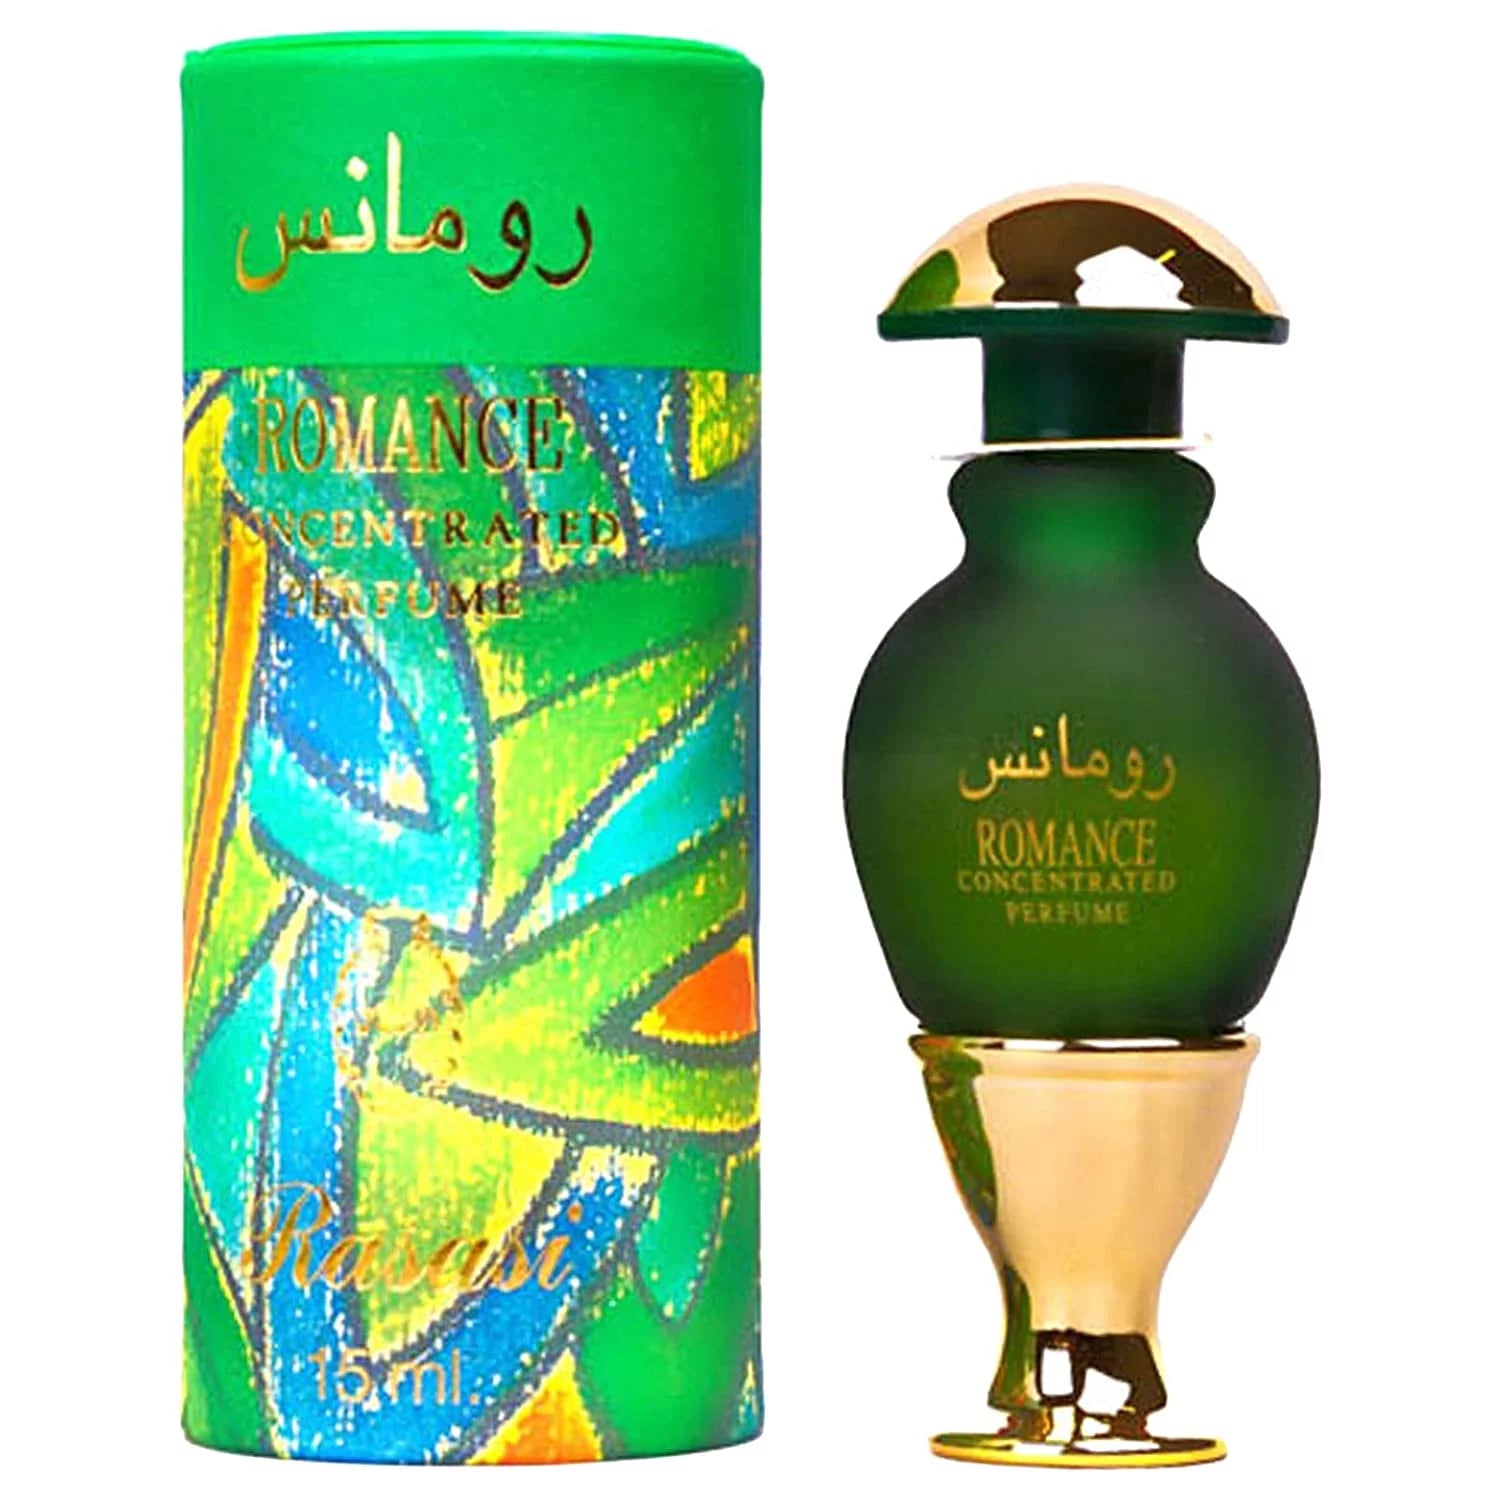 Romance EDP (45ml) perfume spray by Rasasi